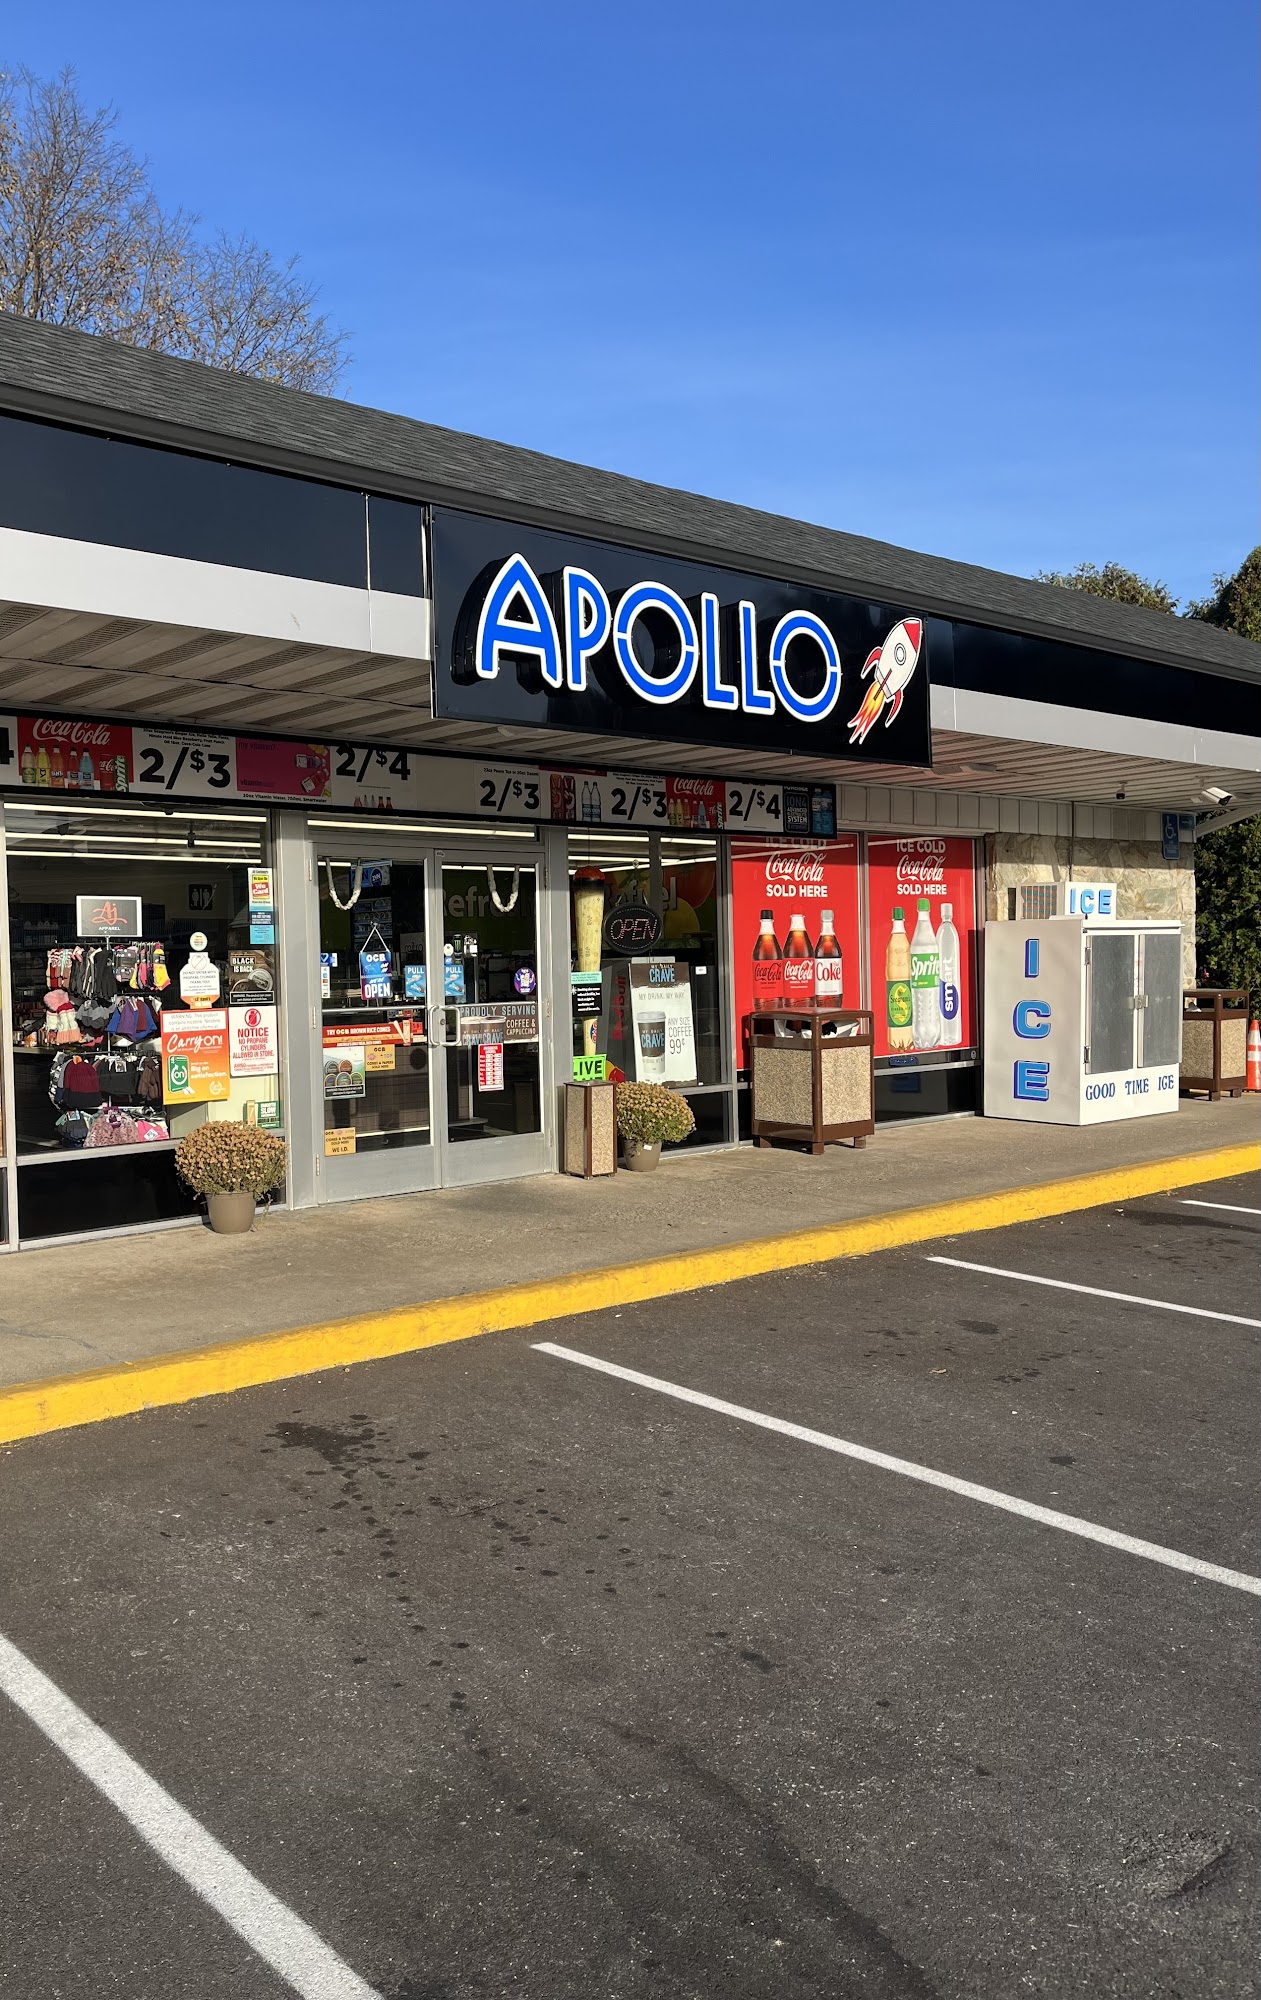 Apollo - Convenience Store